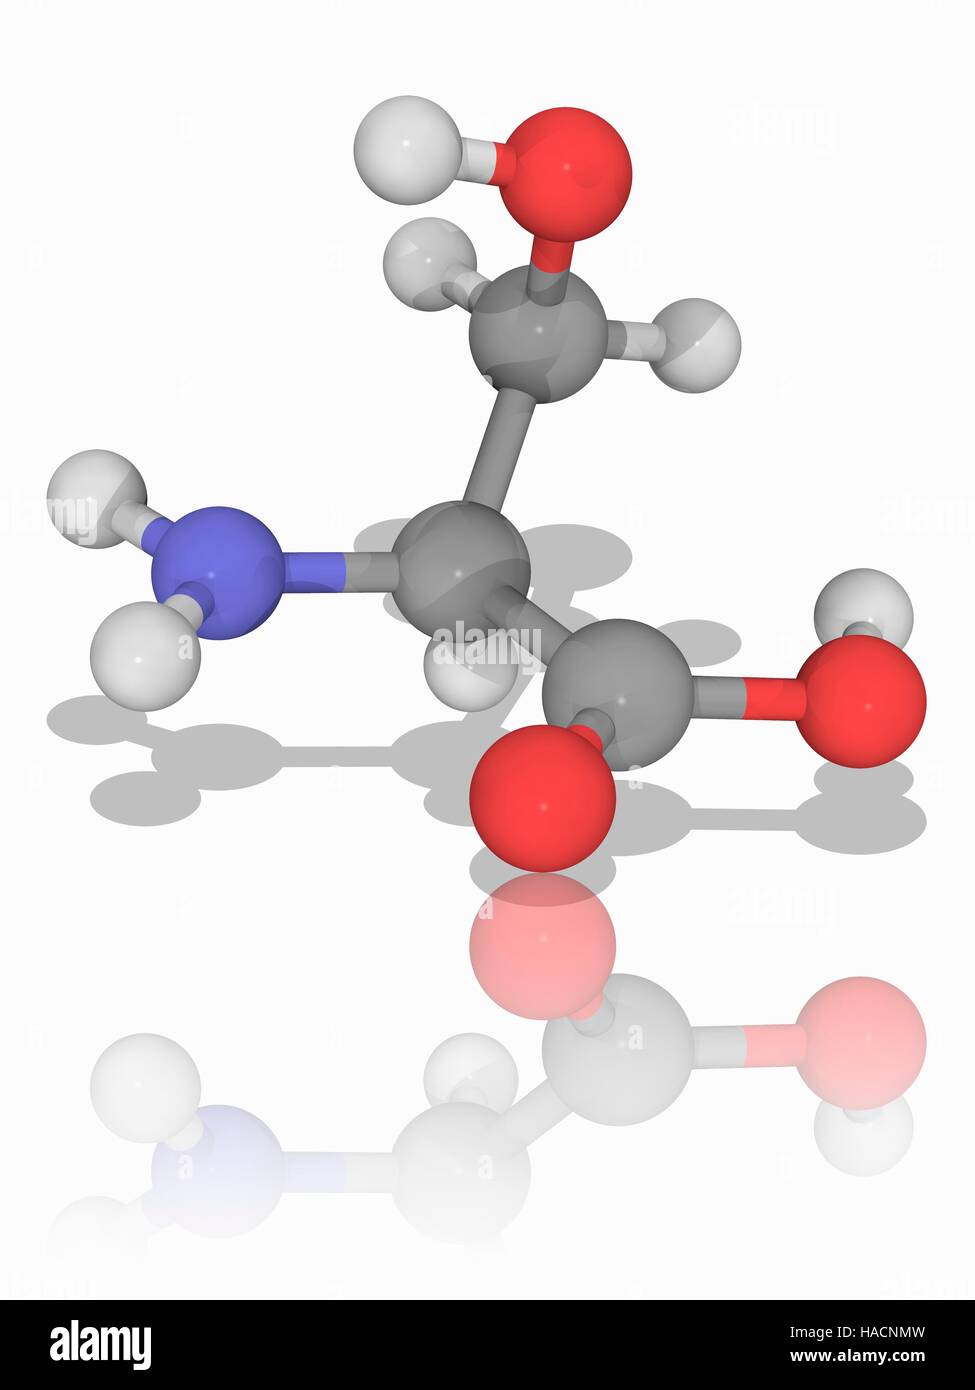 Serin. Molekulares Modell des nicht-essentielle Aminosäure Serin (C3. H7. N.O3), eine der 20 Aminosäuren, die zur Form Proteine verwendet. Atome als Kugeln dargestellt werden und sind farblich gekennzeichnet: Kohlenstoff (grau), Wasserstoff (weiß), Stickstoff (blau) und Sauerstoff (rot). Abbildung. Stockfoto